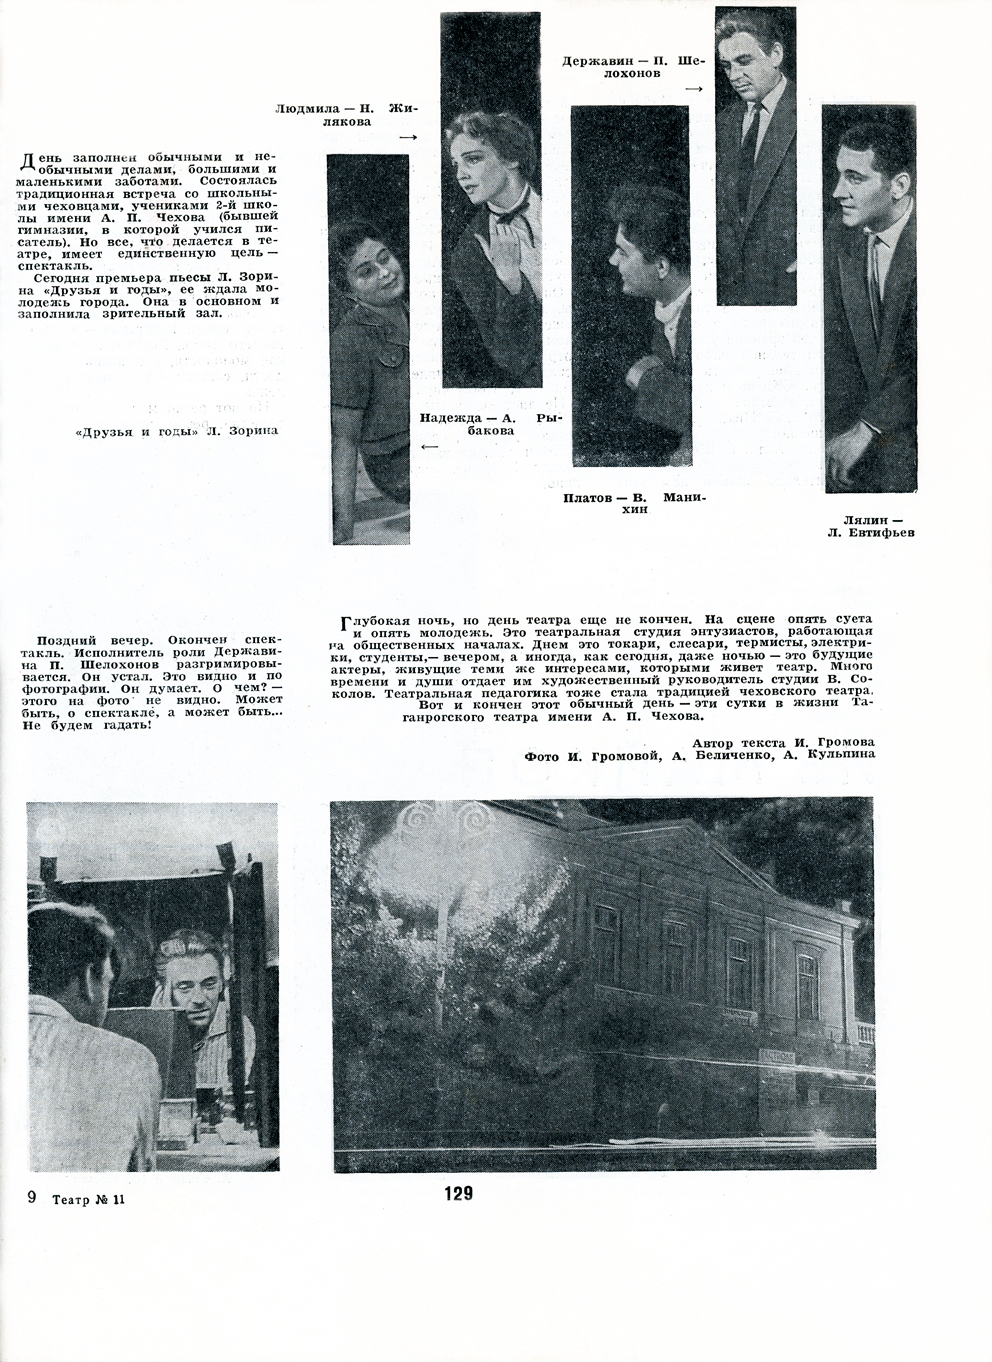 Петр Шелохонов. Статья в журнале "Театр" №11, 1963 г.